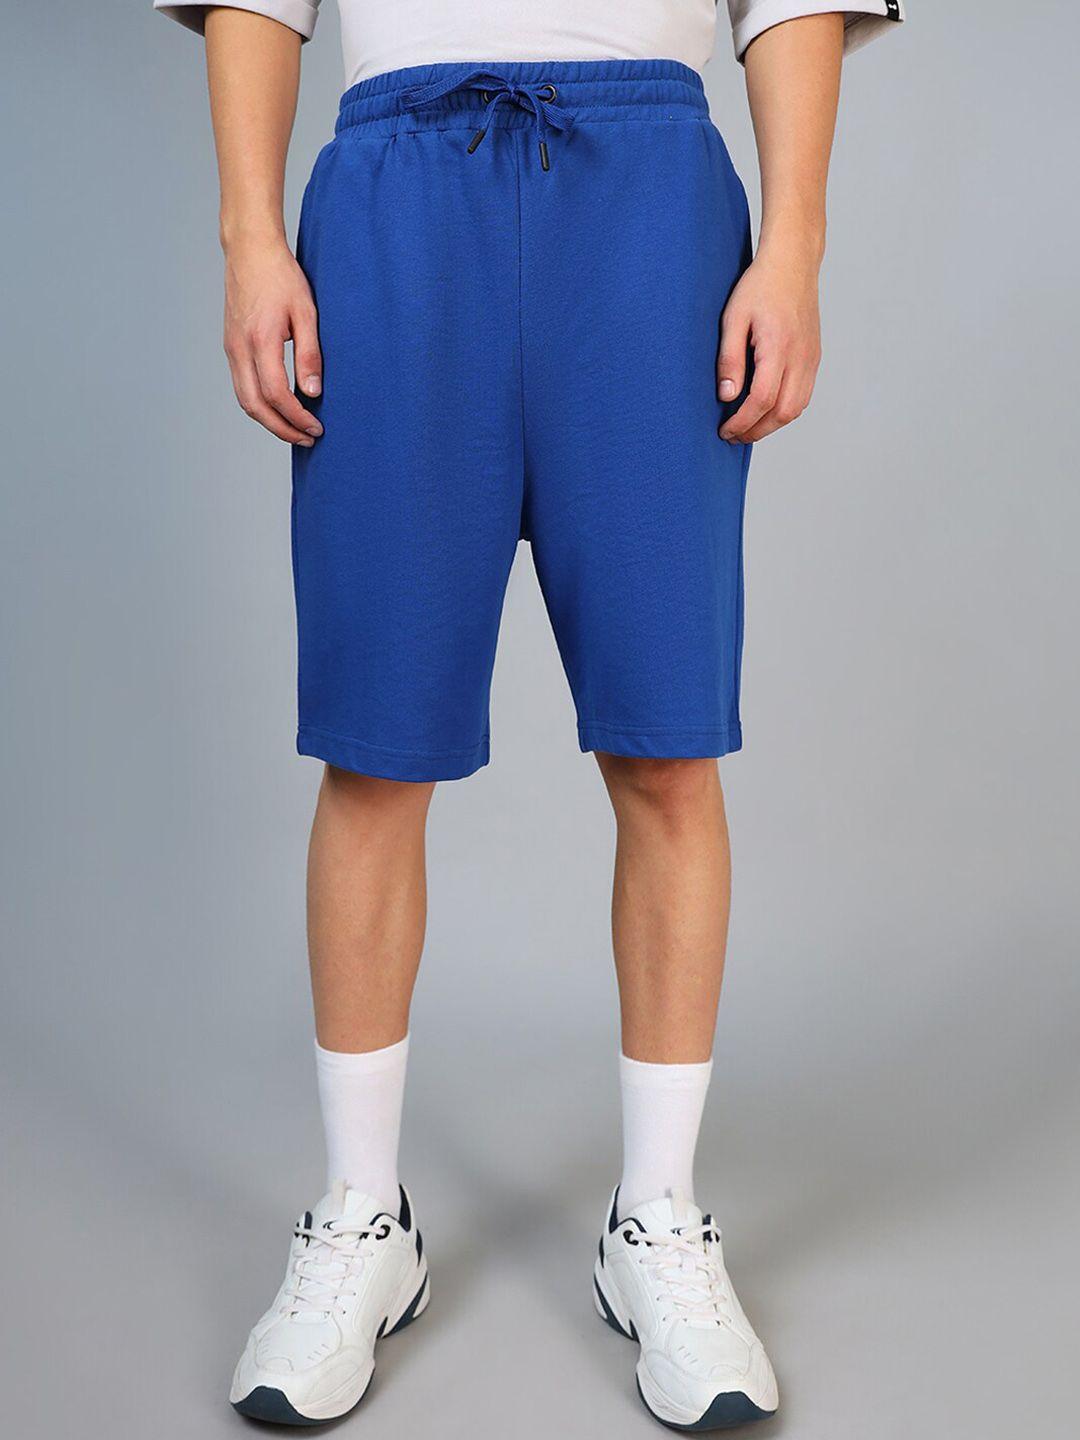 bewakoof-men-blue-oversized-shorts